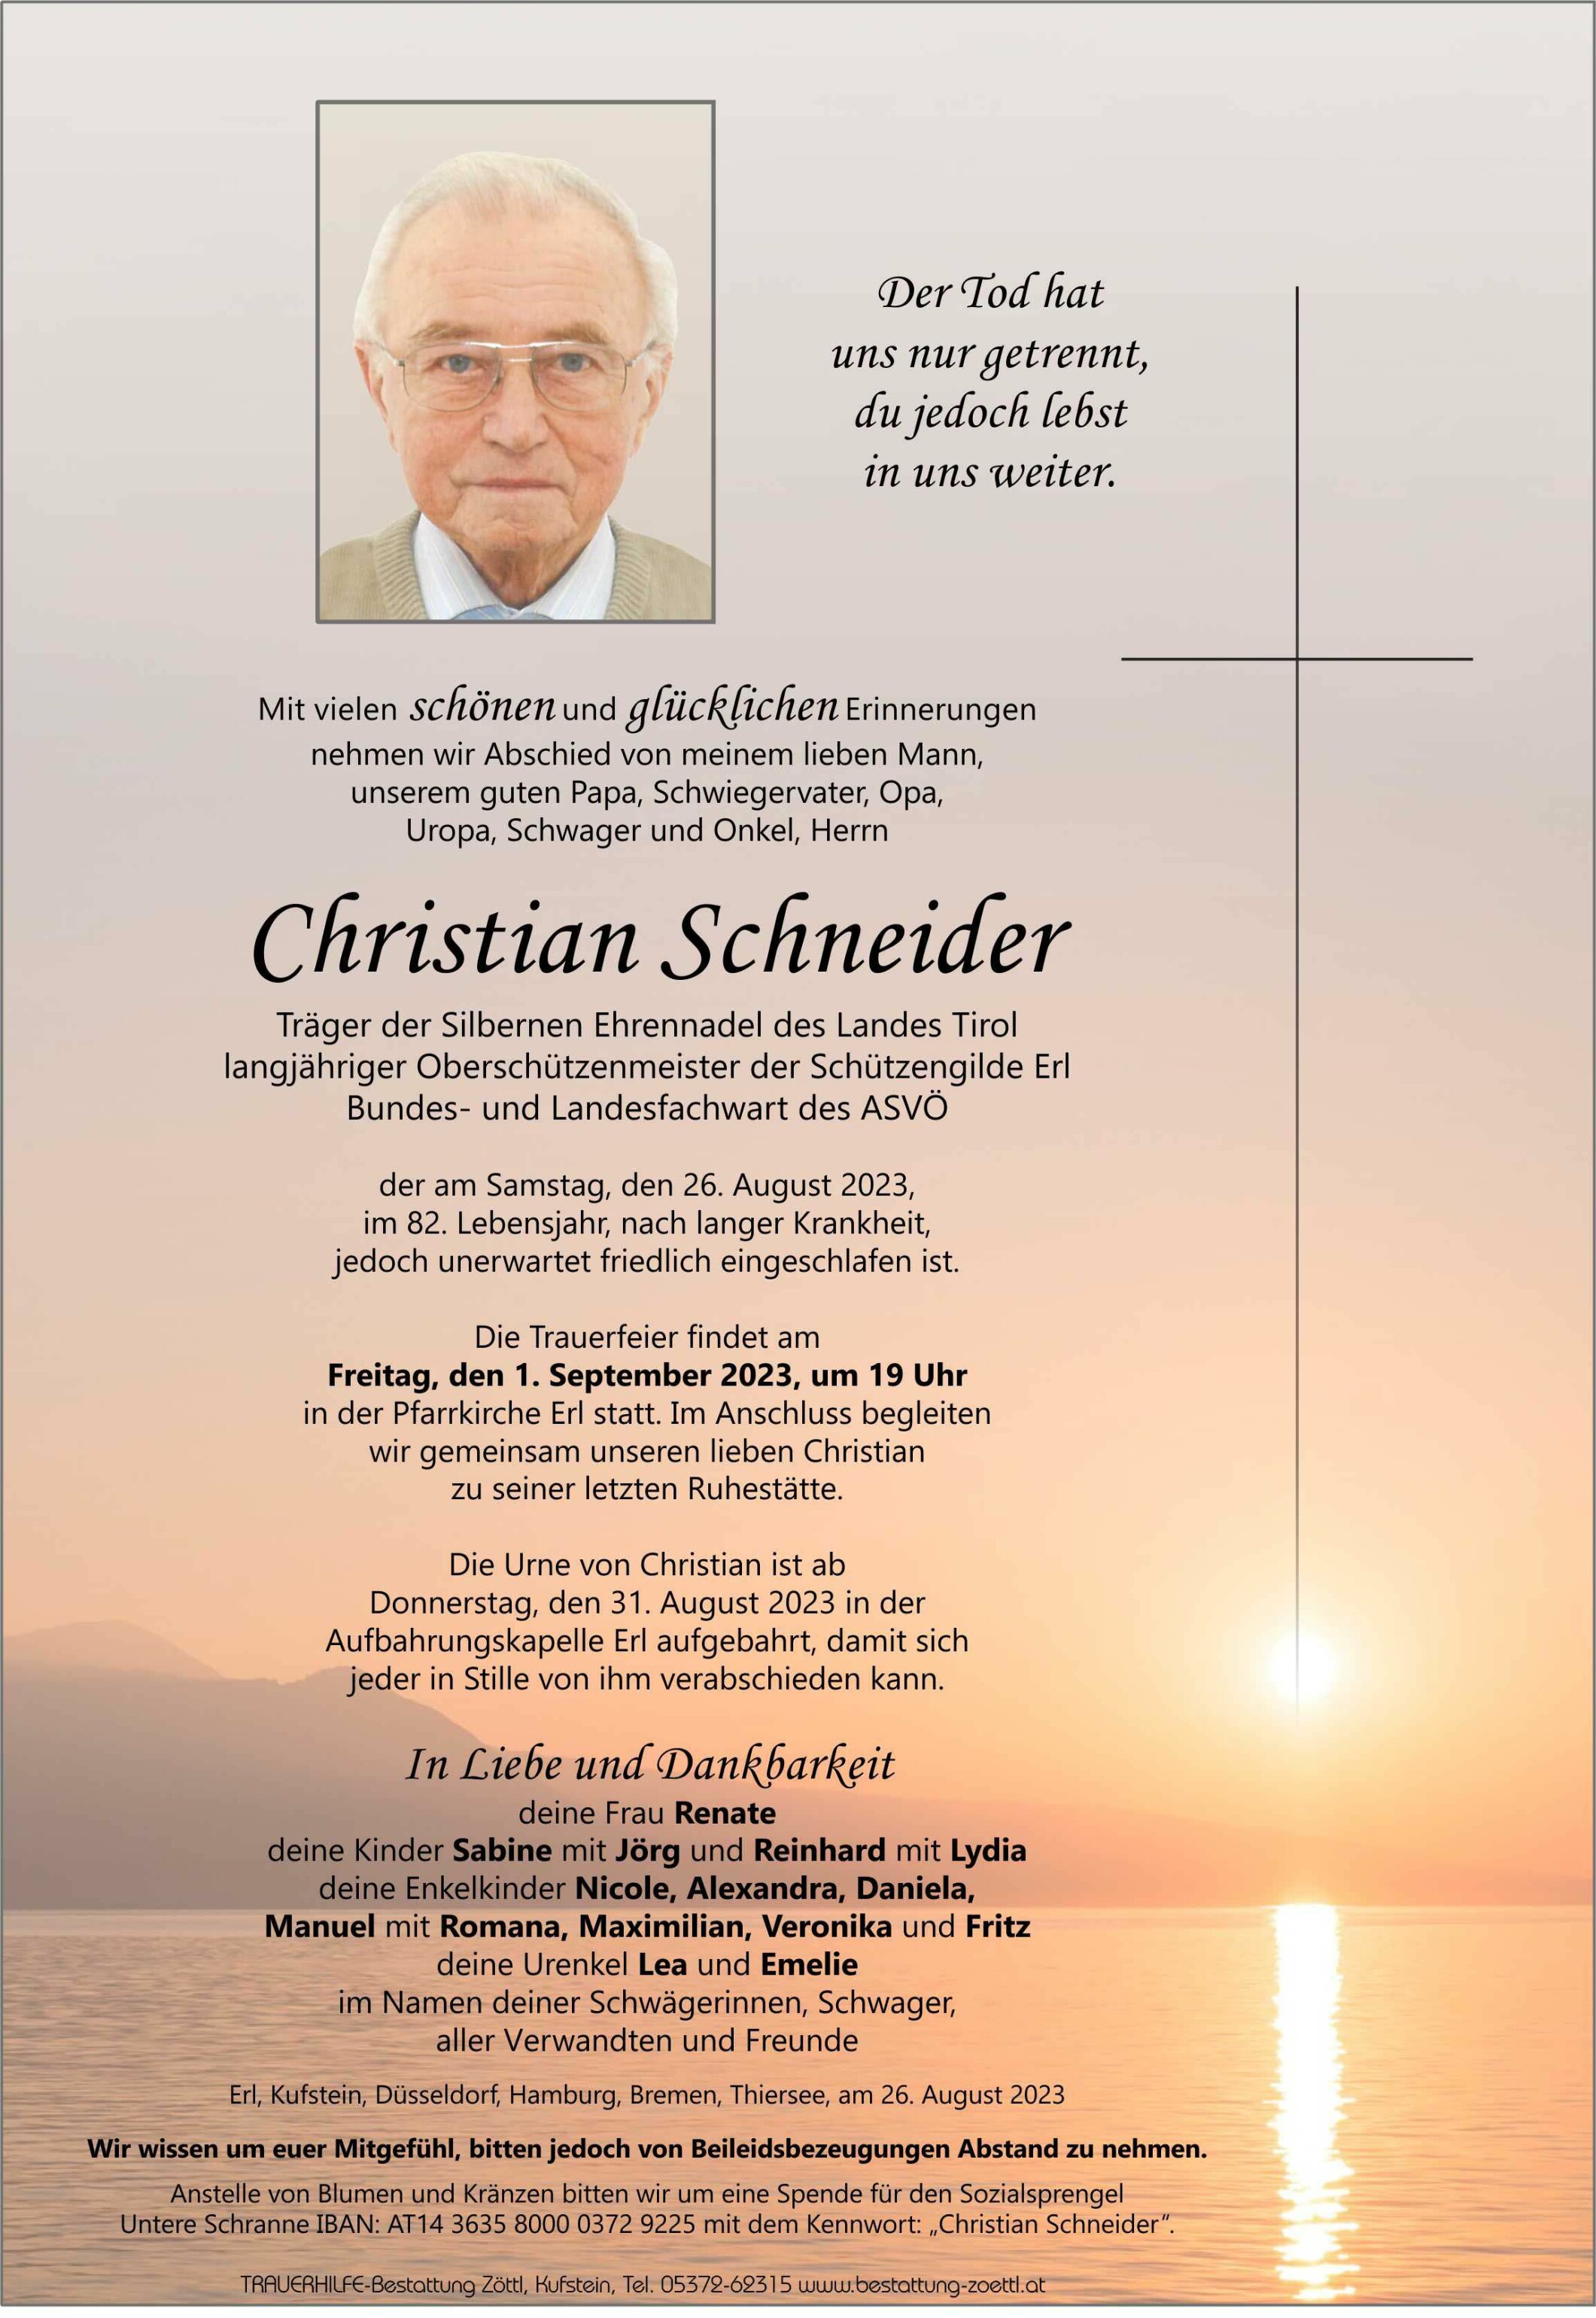 Christian Schneider